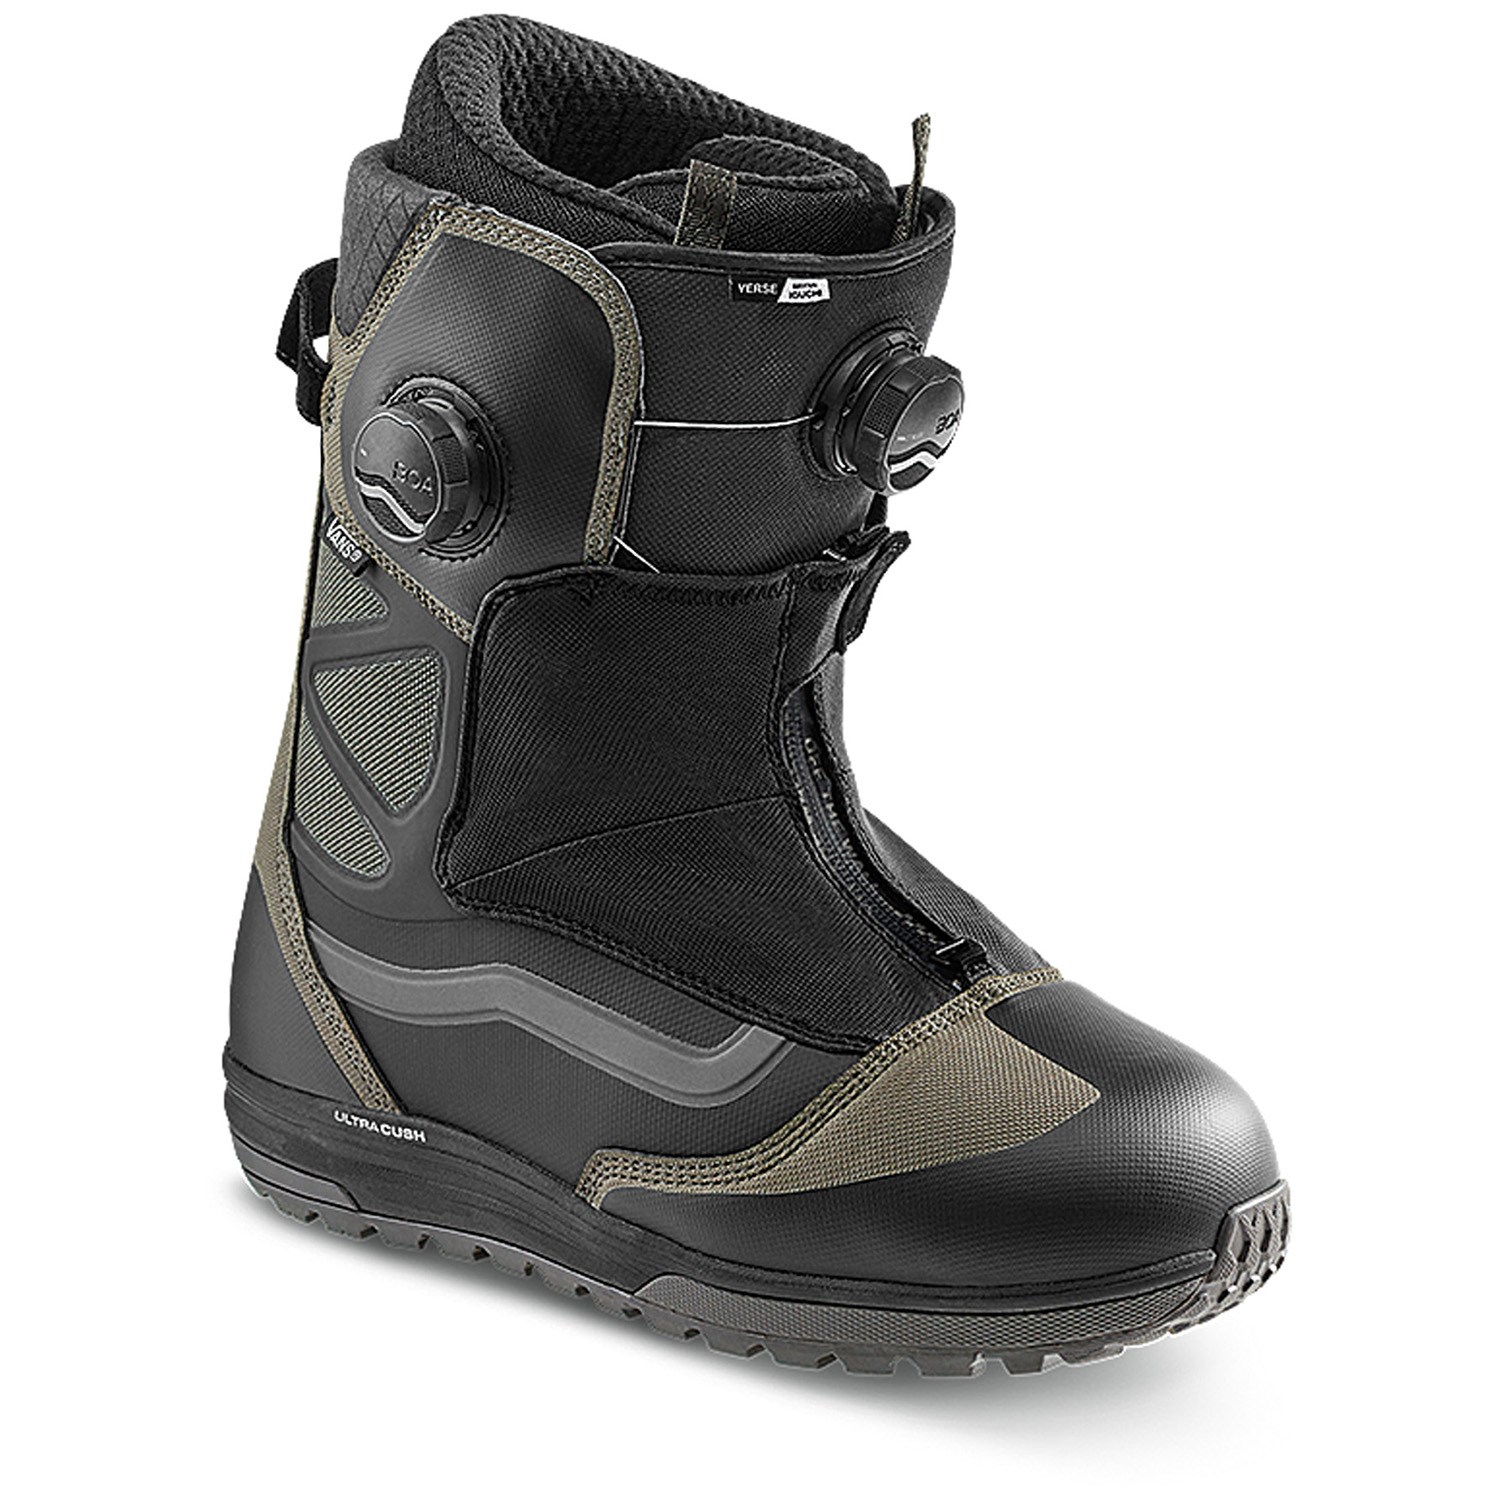 Gum Hi Standard Linerless DX2021 Details about   VANS Mens Snowboard BootsBlack 